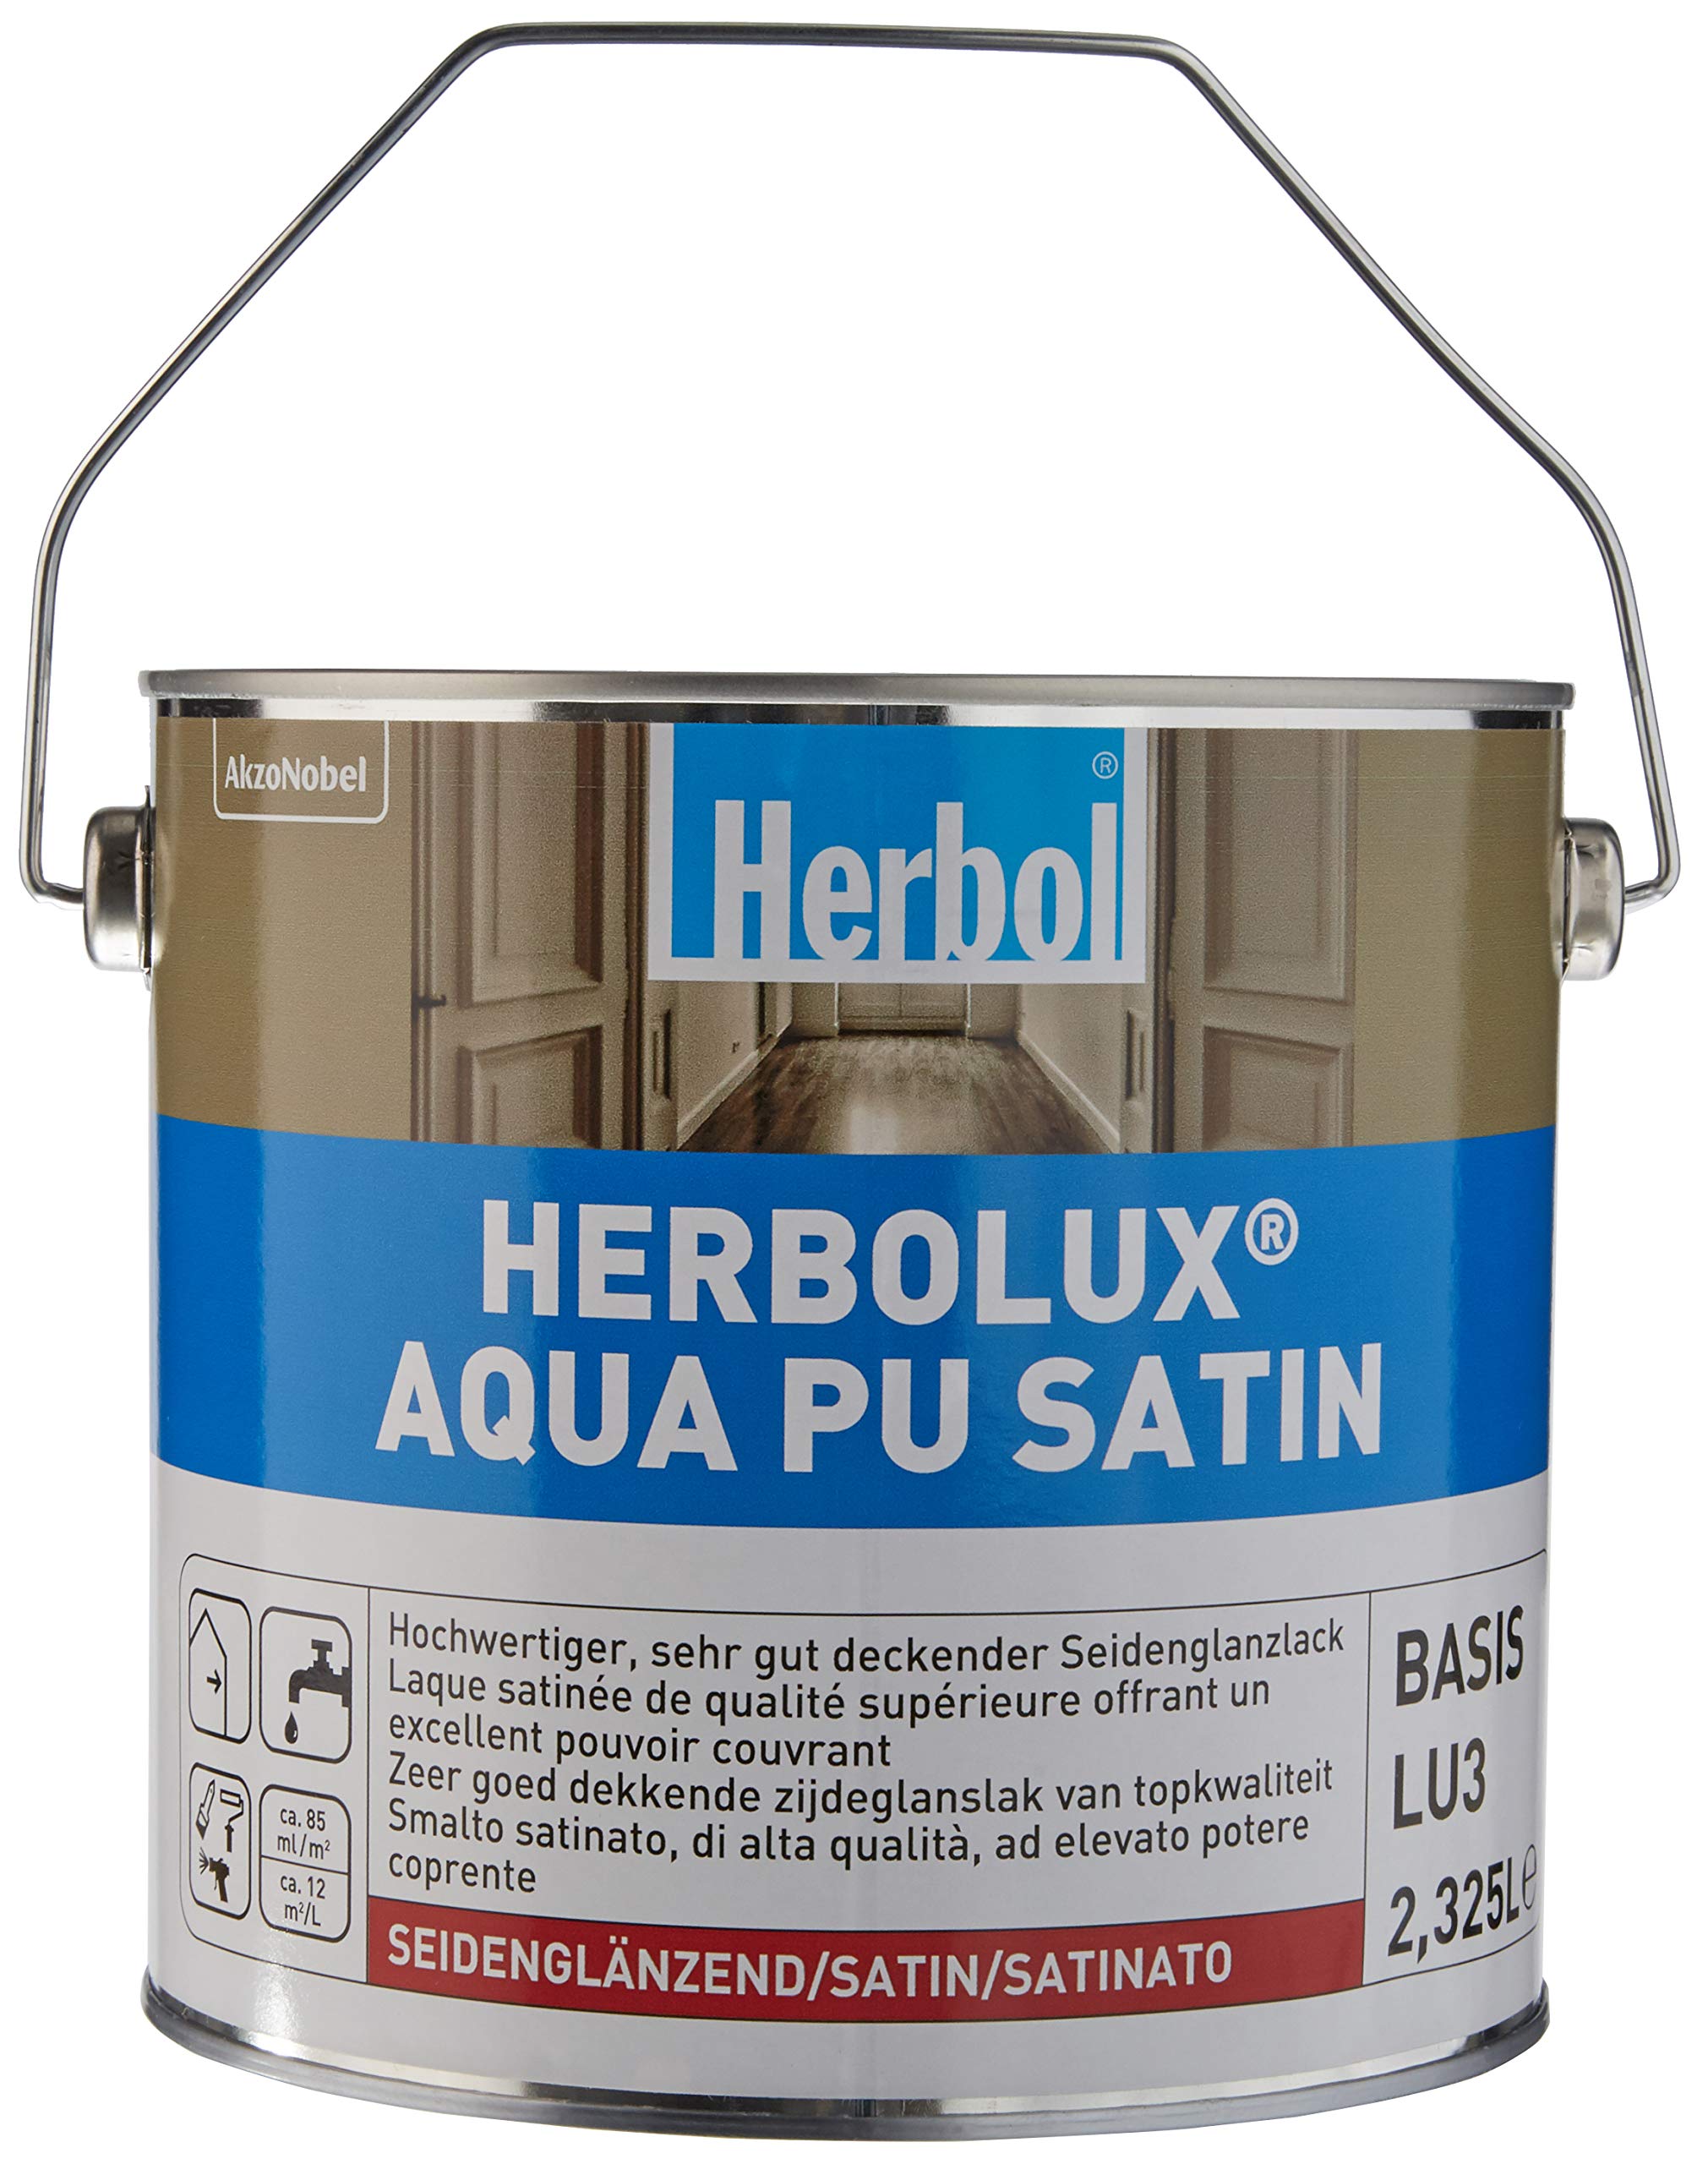 Herbol Herbolux Aqua PU Satin Basis 2,325 ltr. 2,500 L